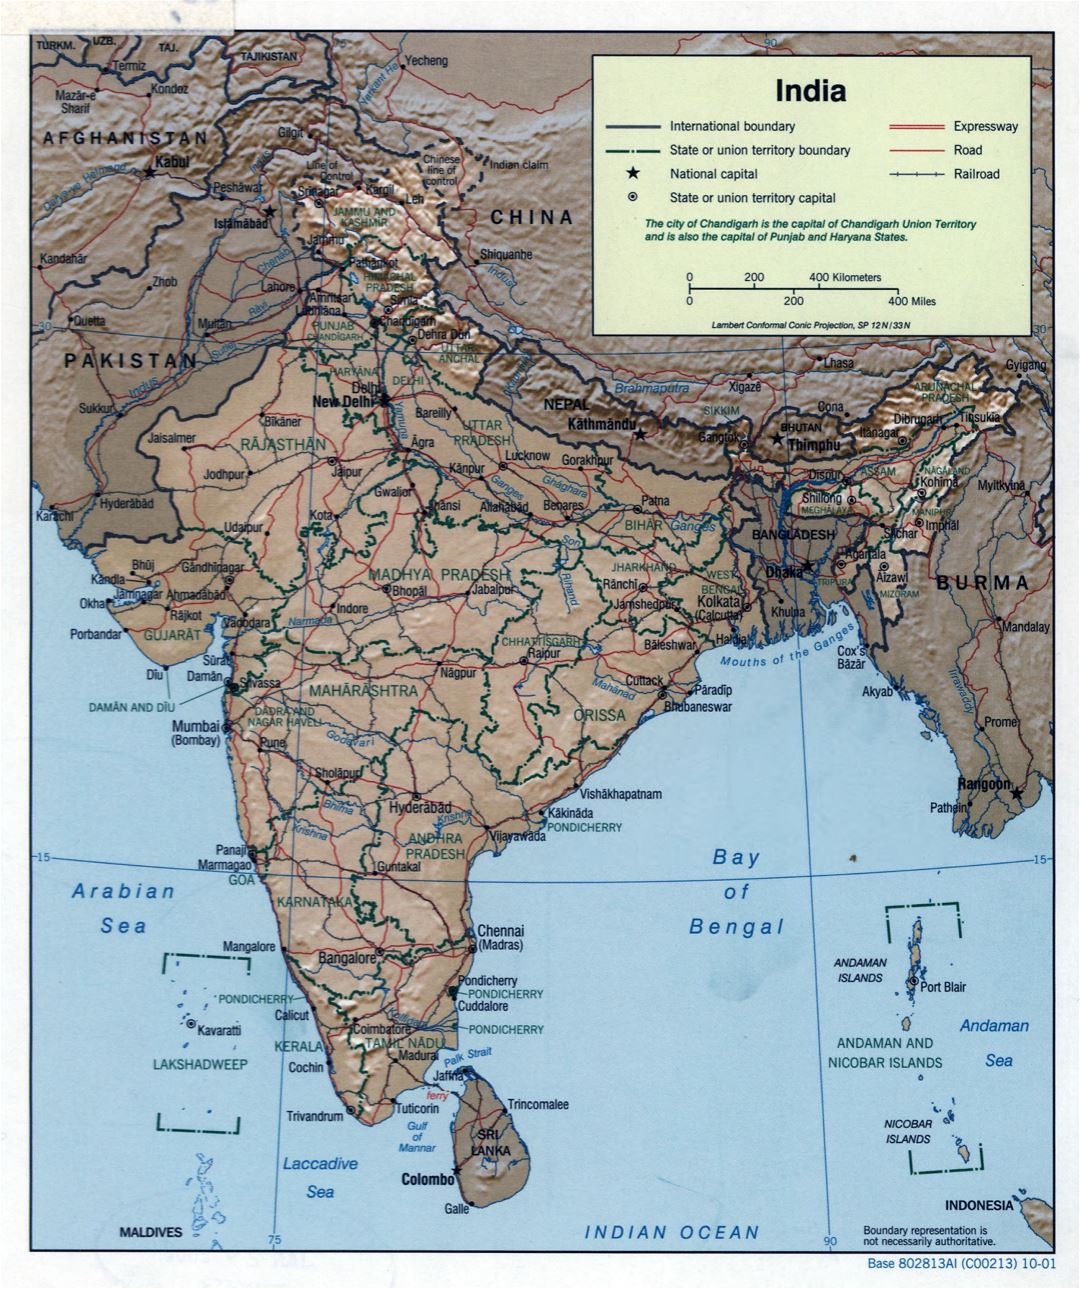 A gran escala mapa político y administrativo de la India con socorro, carreteras, ferrocarriles y principales ciudades - 2001